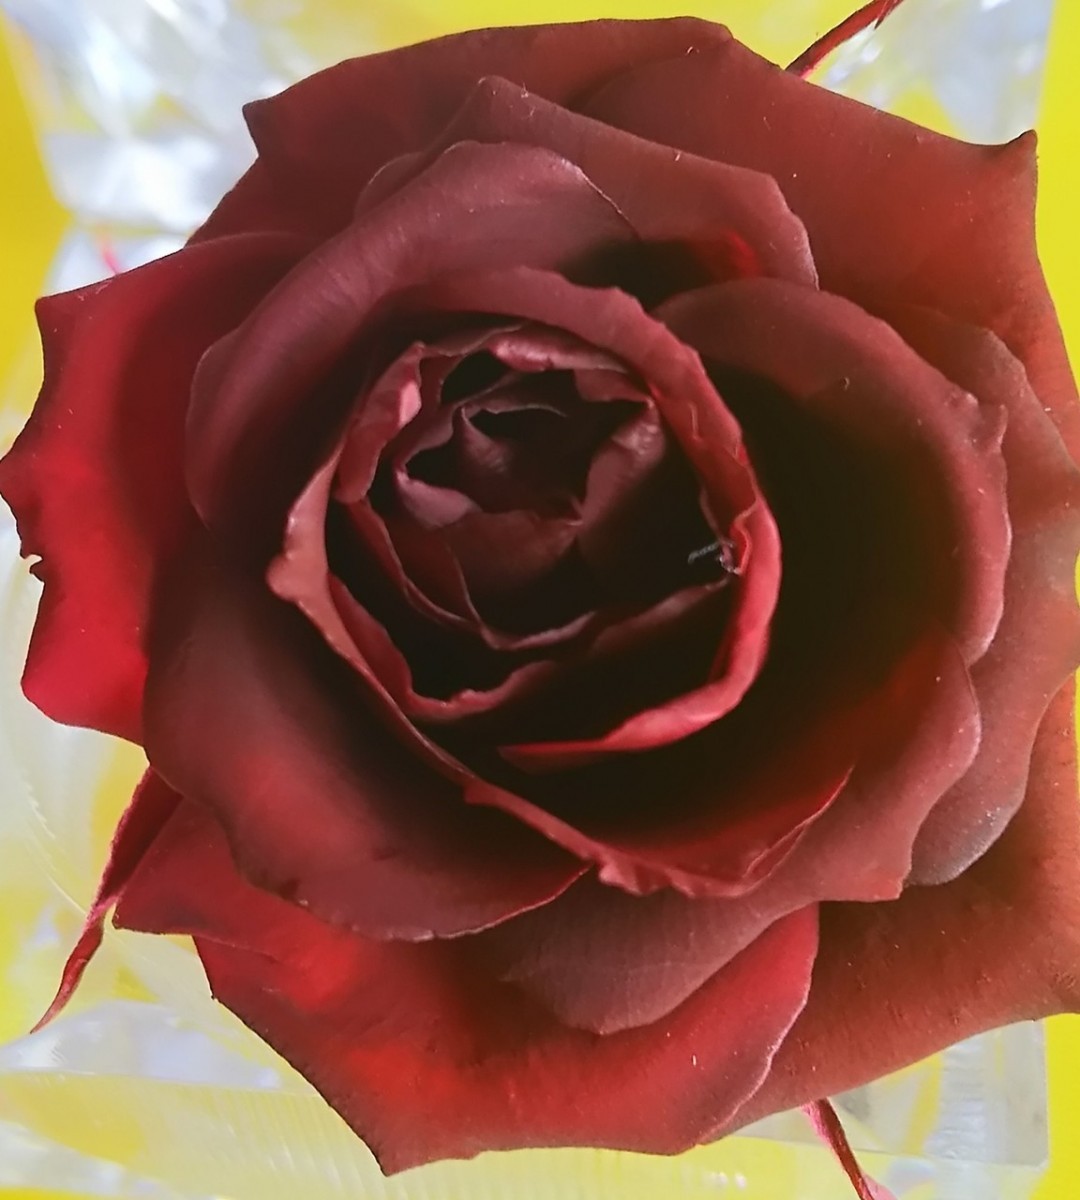  консервированный цветок . цвет жидкость ( глубокий красный )150ml